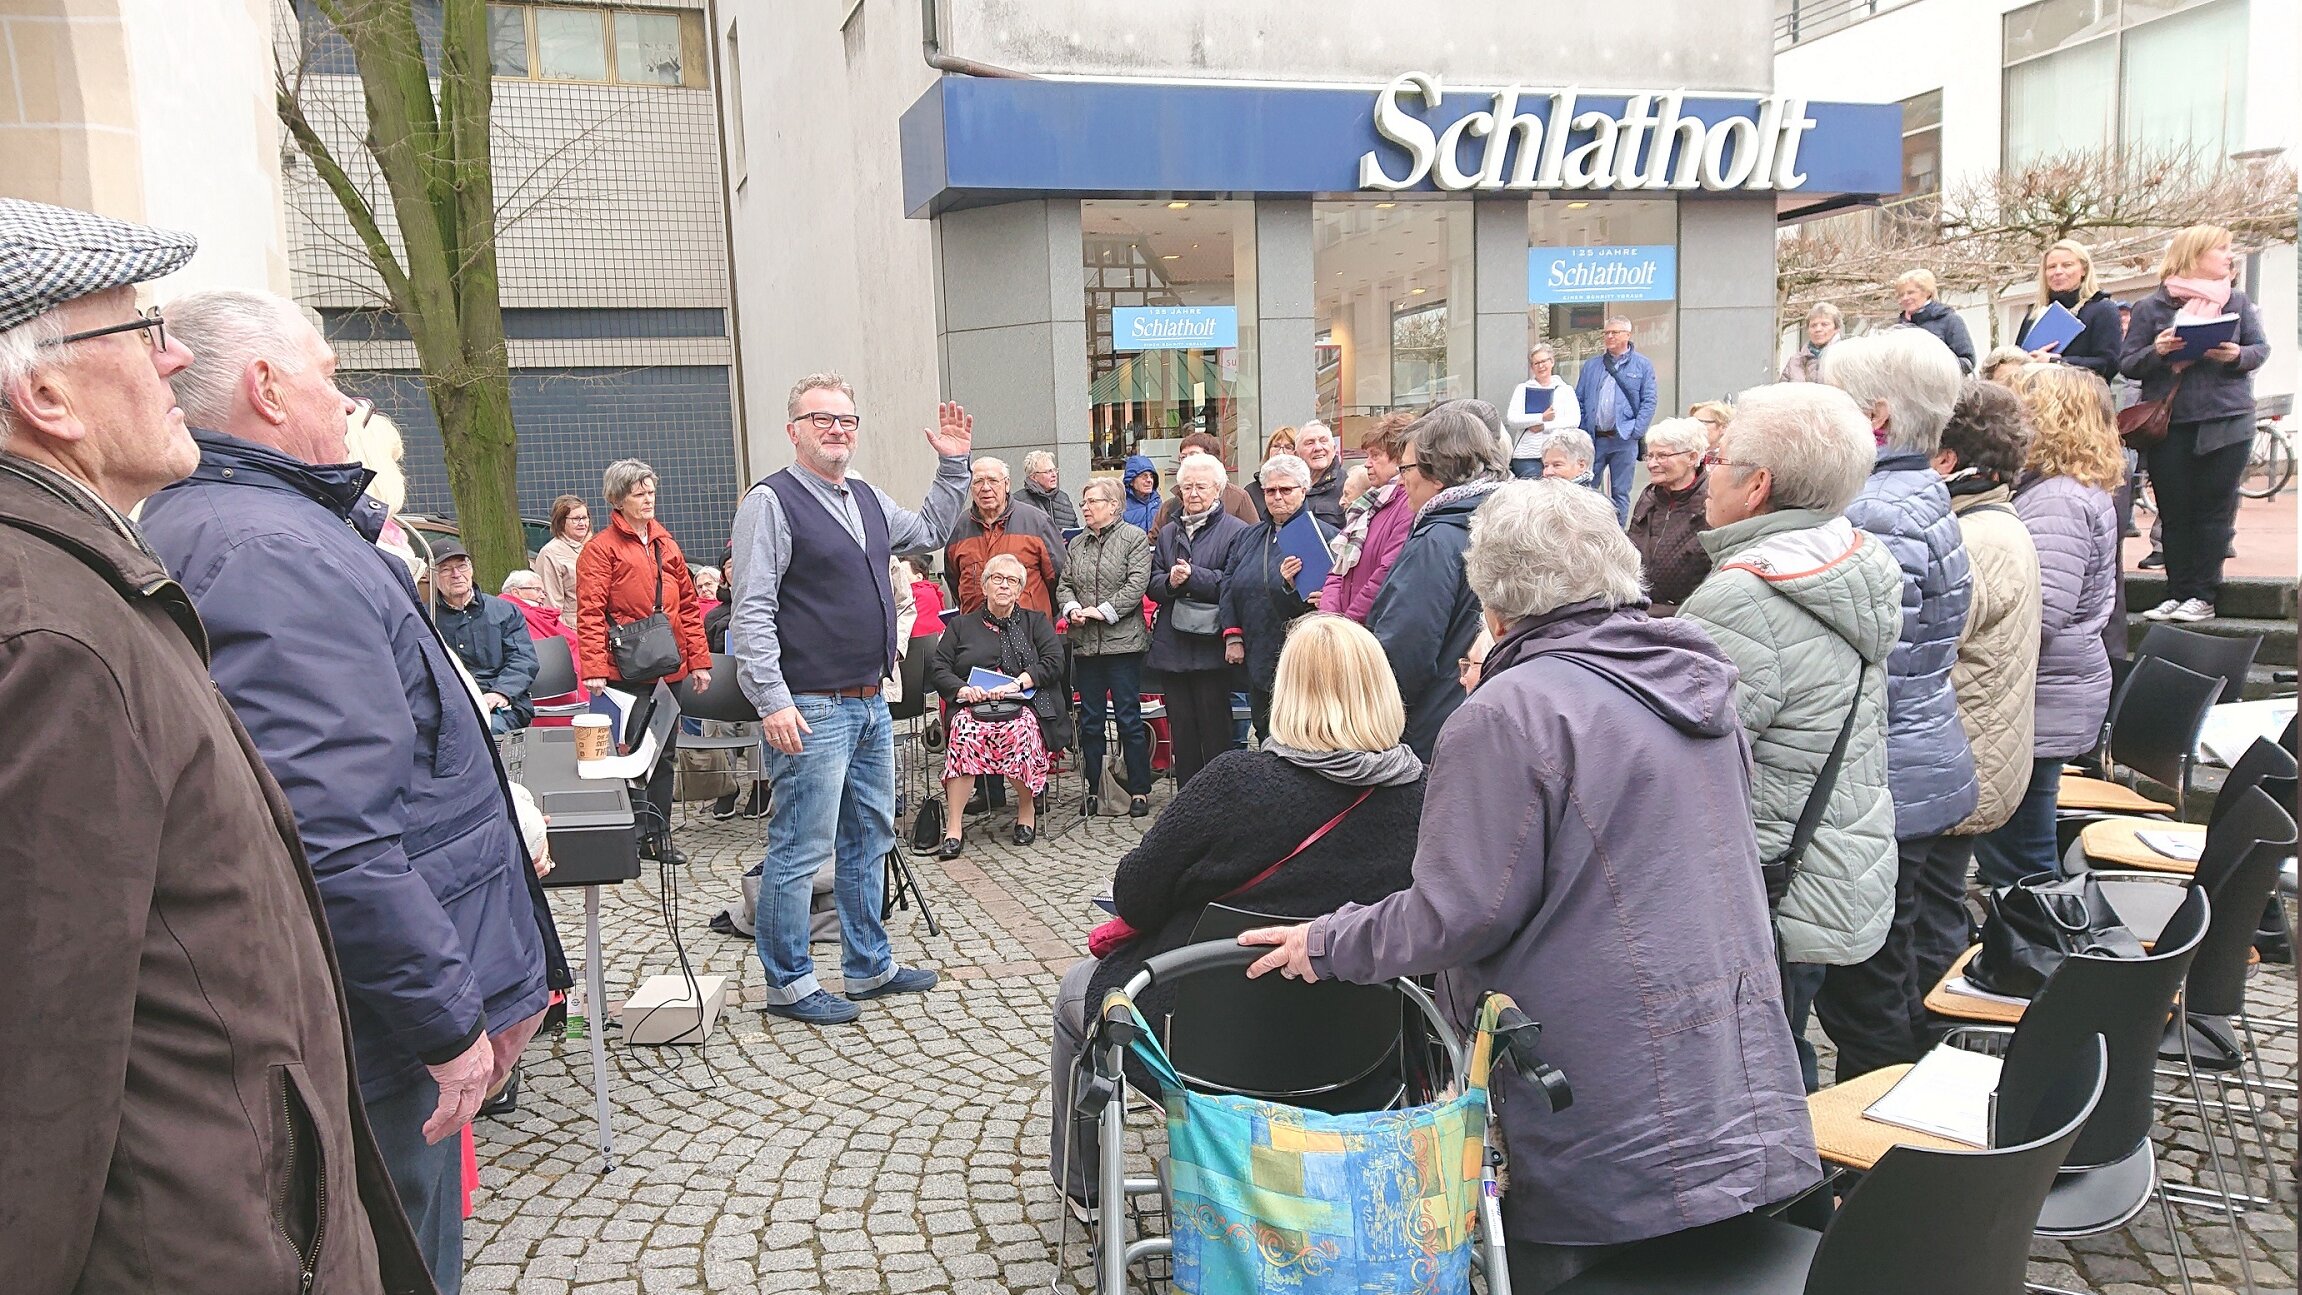 Auf diesem Foto sehen Sie einen öffentlichen Platz, auf dem viele ältere Menschen gemeinsam singen